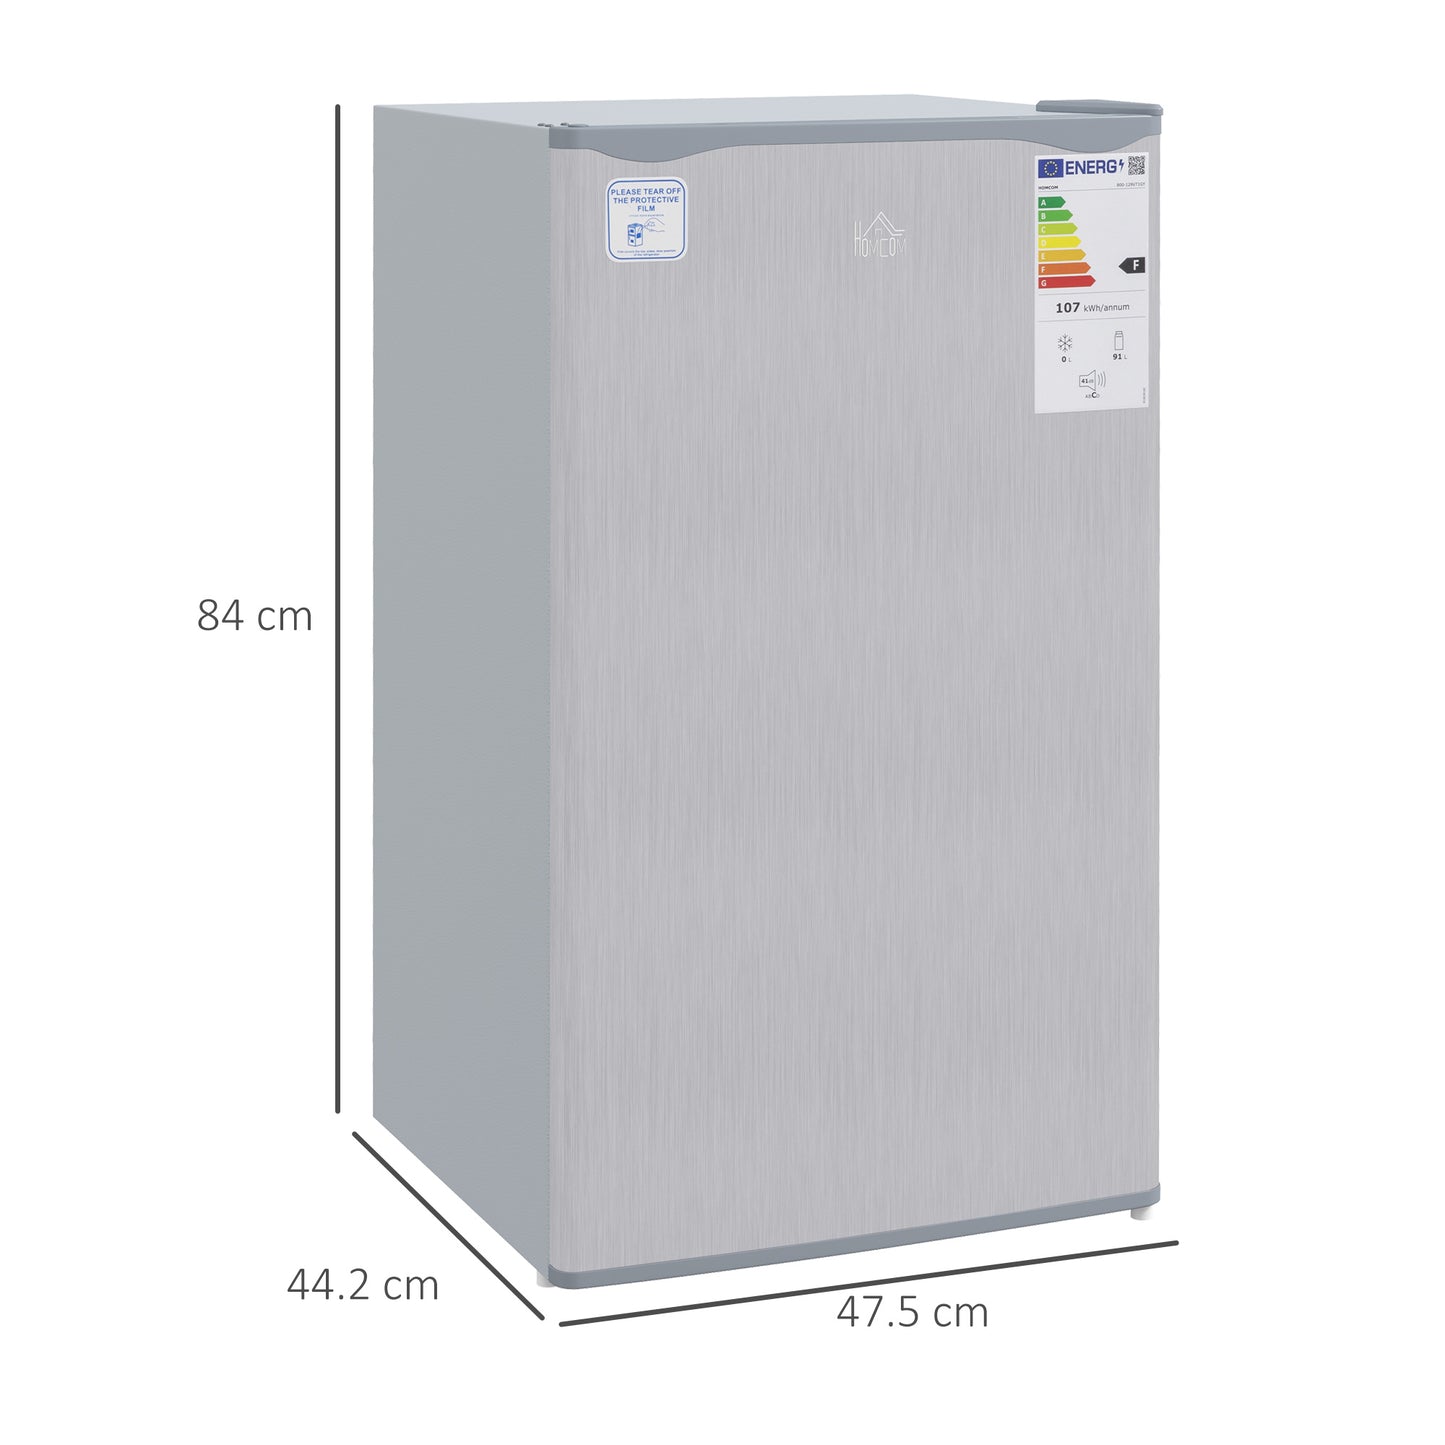 HOMCOM 91 Litre Freestanding Under Counter Fridge Freezer with Chiller Box, Reversible Door, Adjustable Thermostat, 47.5cm Wide, Noise Level: Decibels 40, Grey